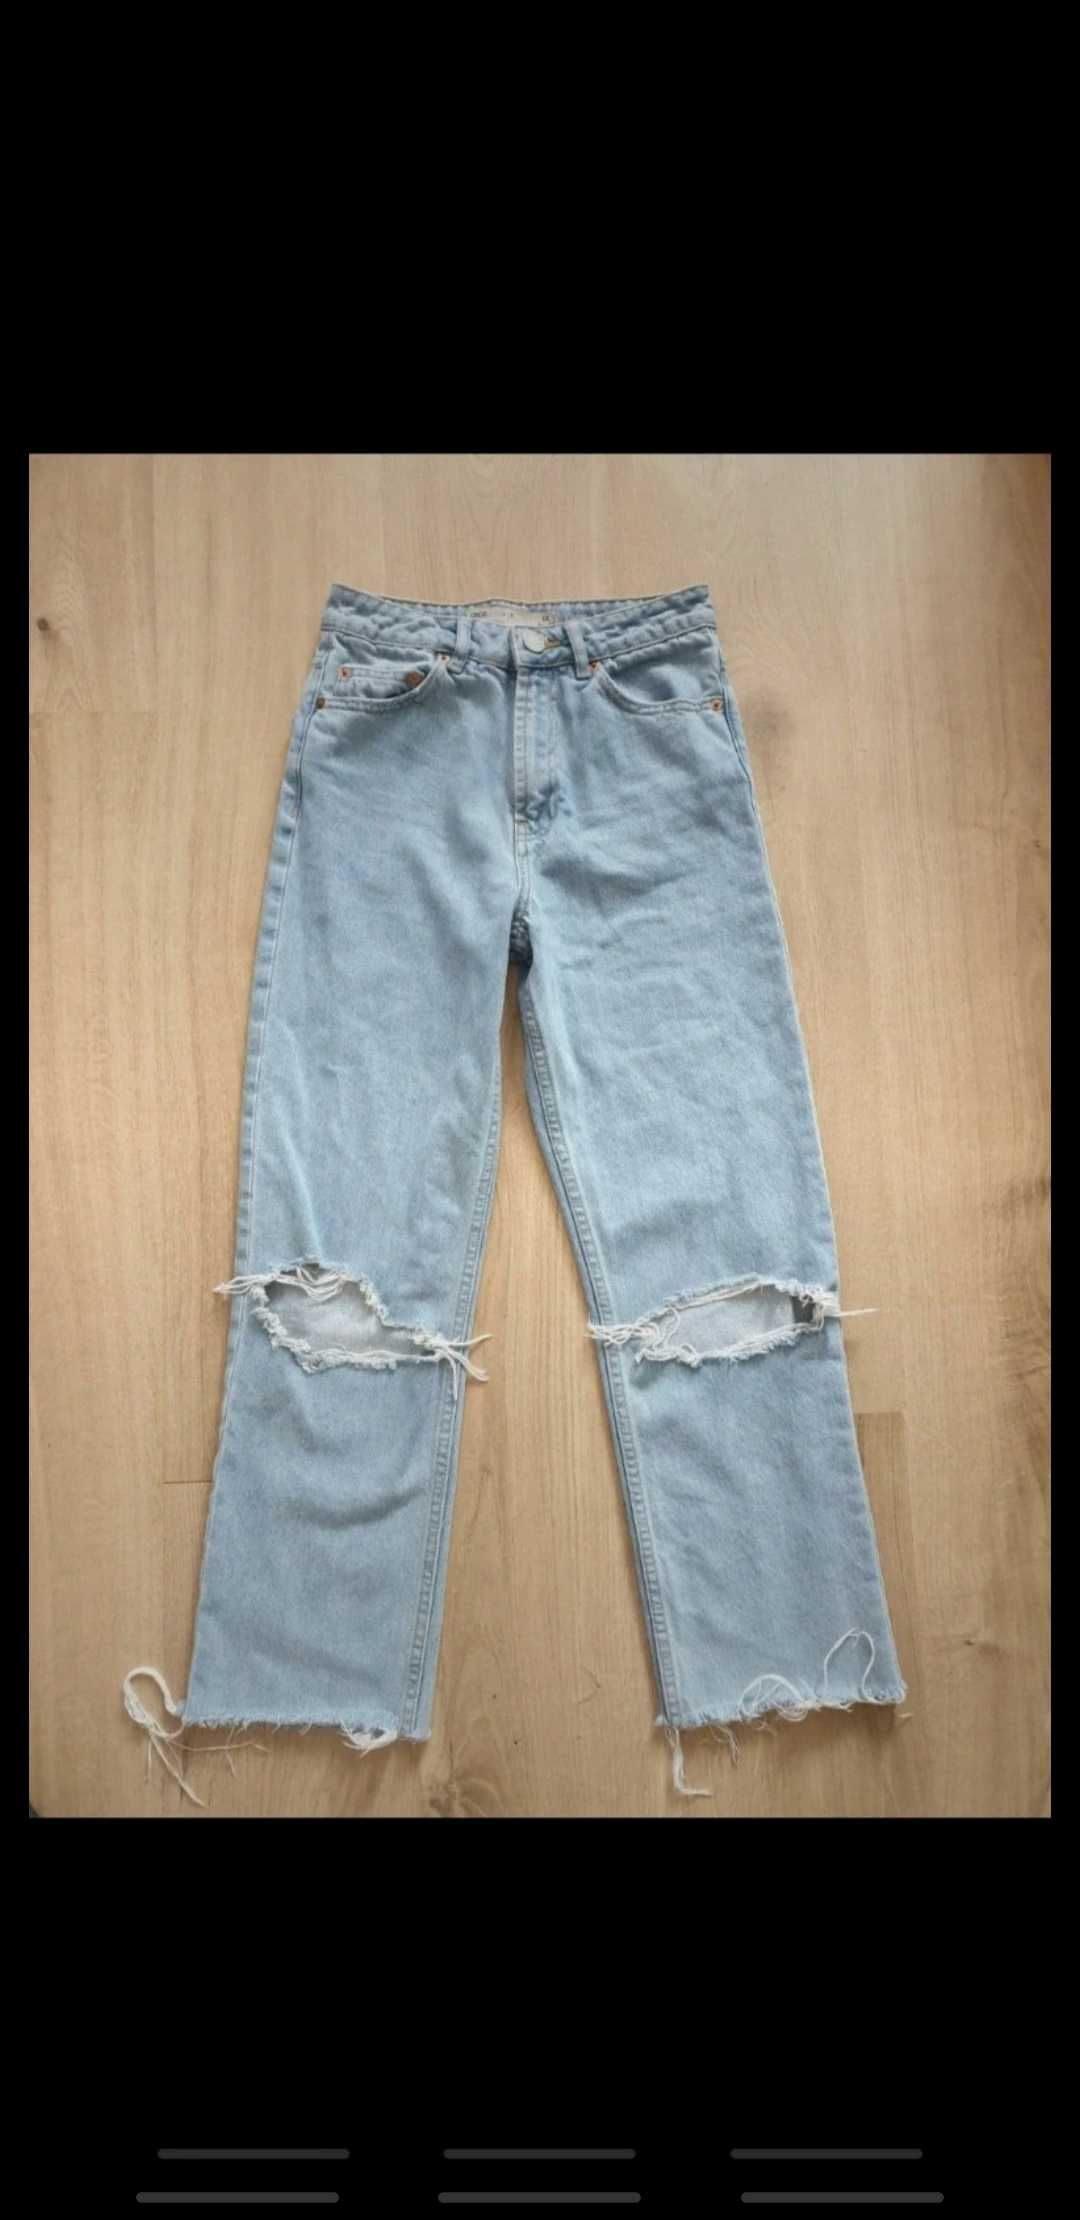 Jasnoniebieskie spodnie jeansowe Asos xs wysoki stan szeroka nogawka